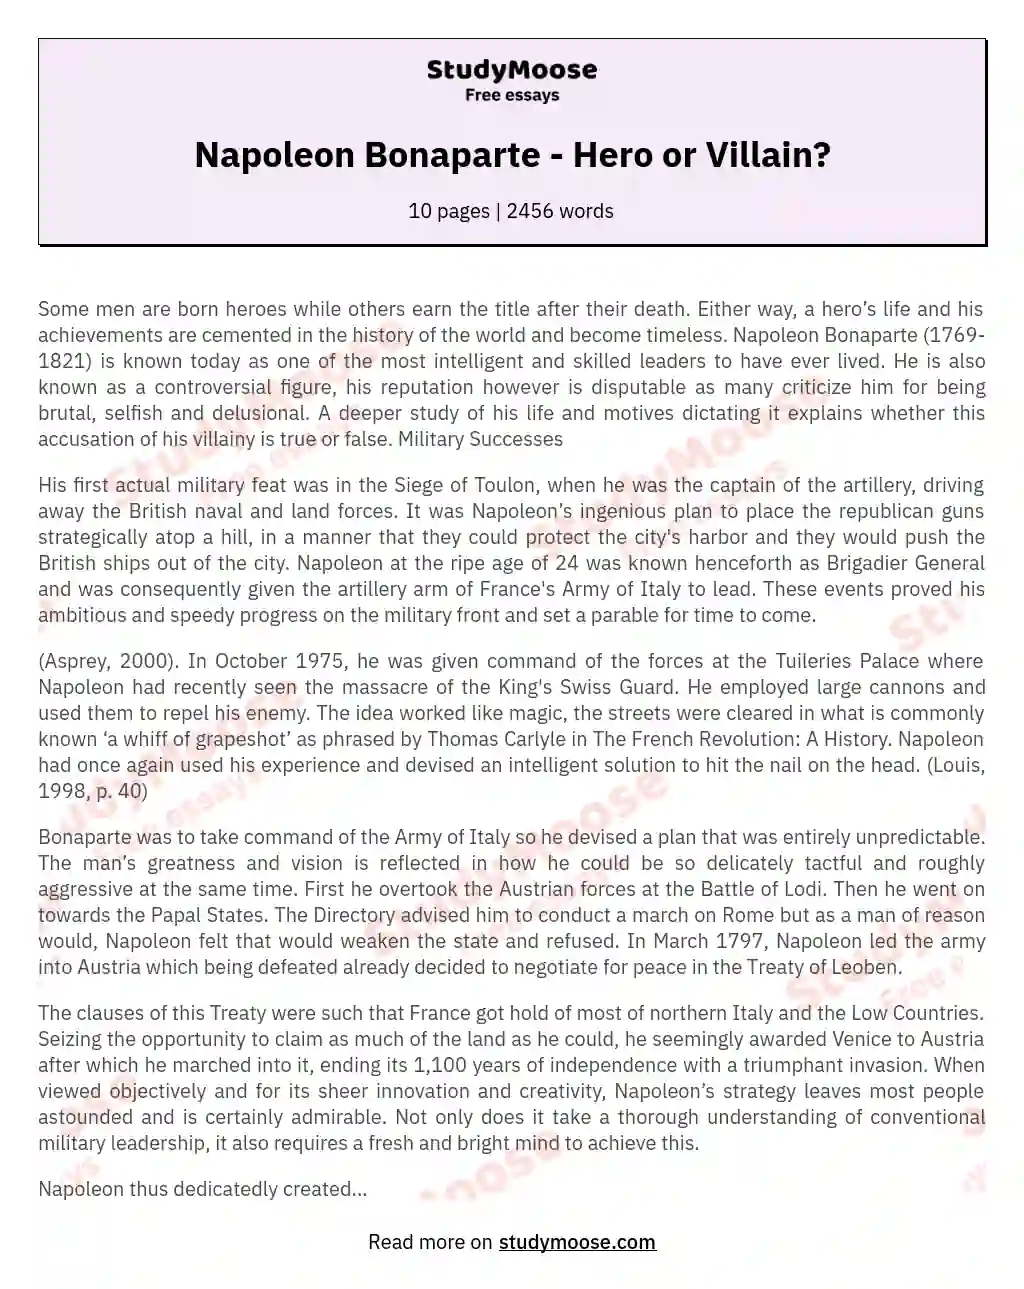 Napoleon Bonaparte - Hero or Villain?